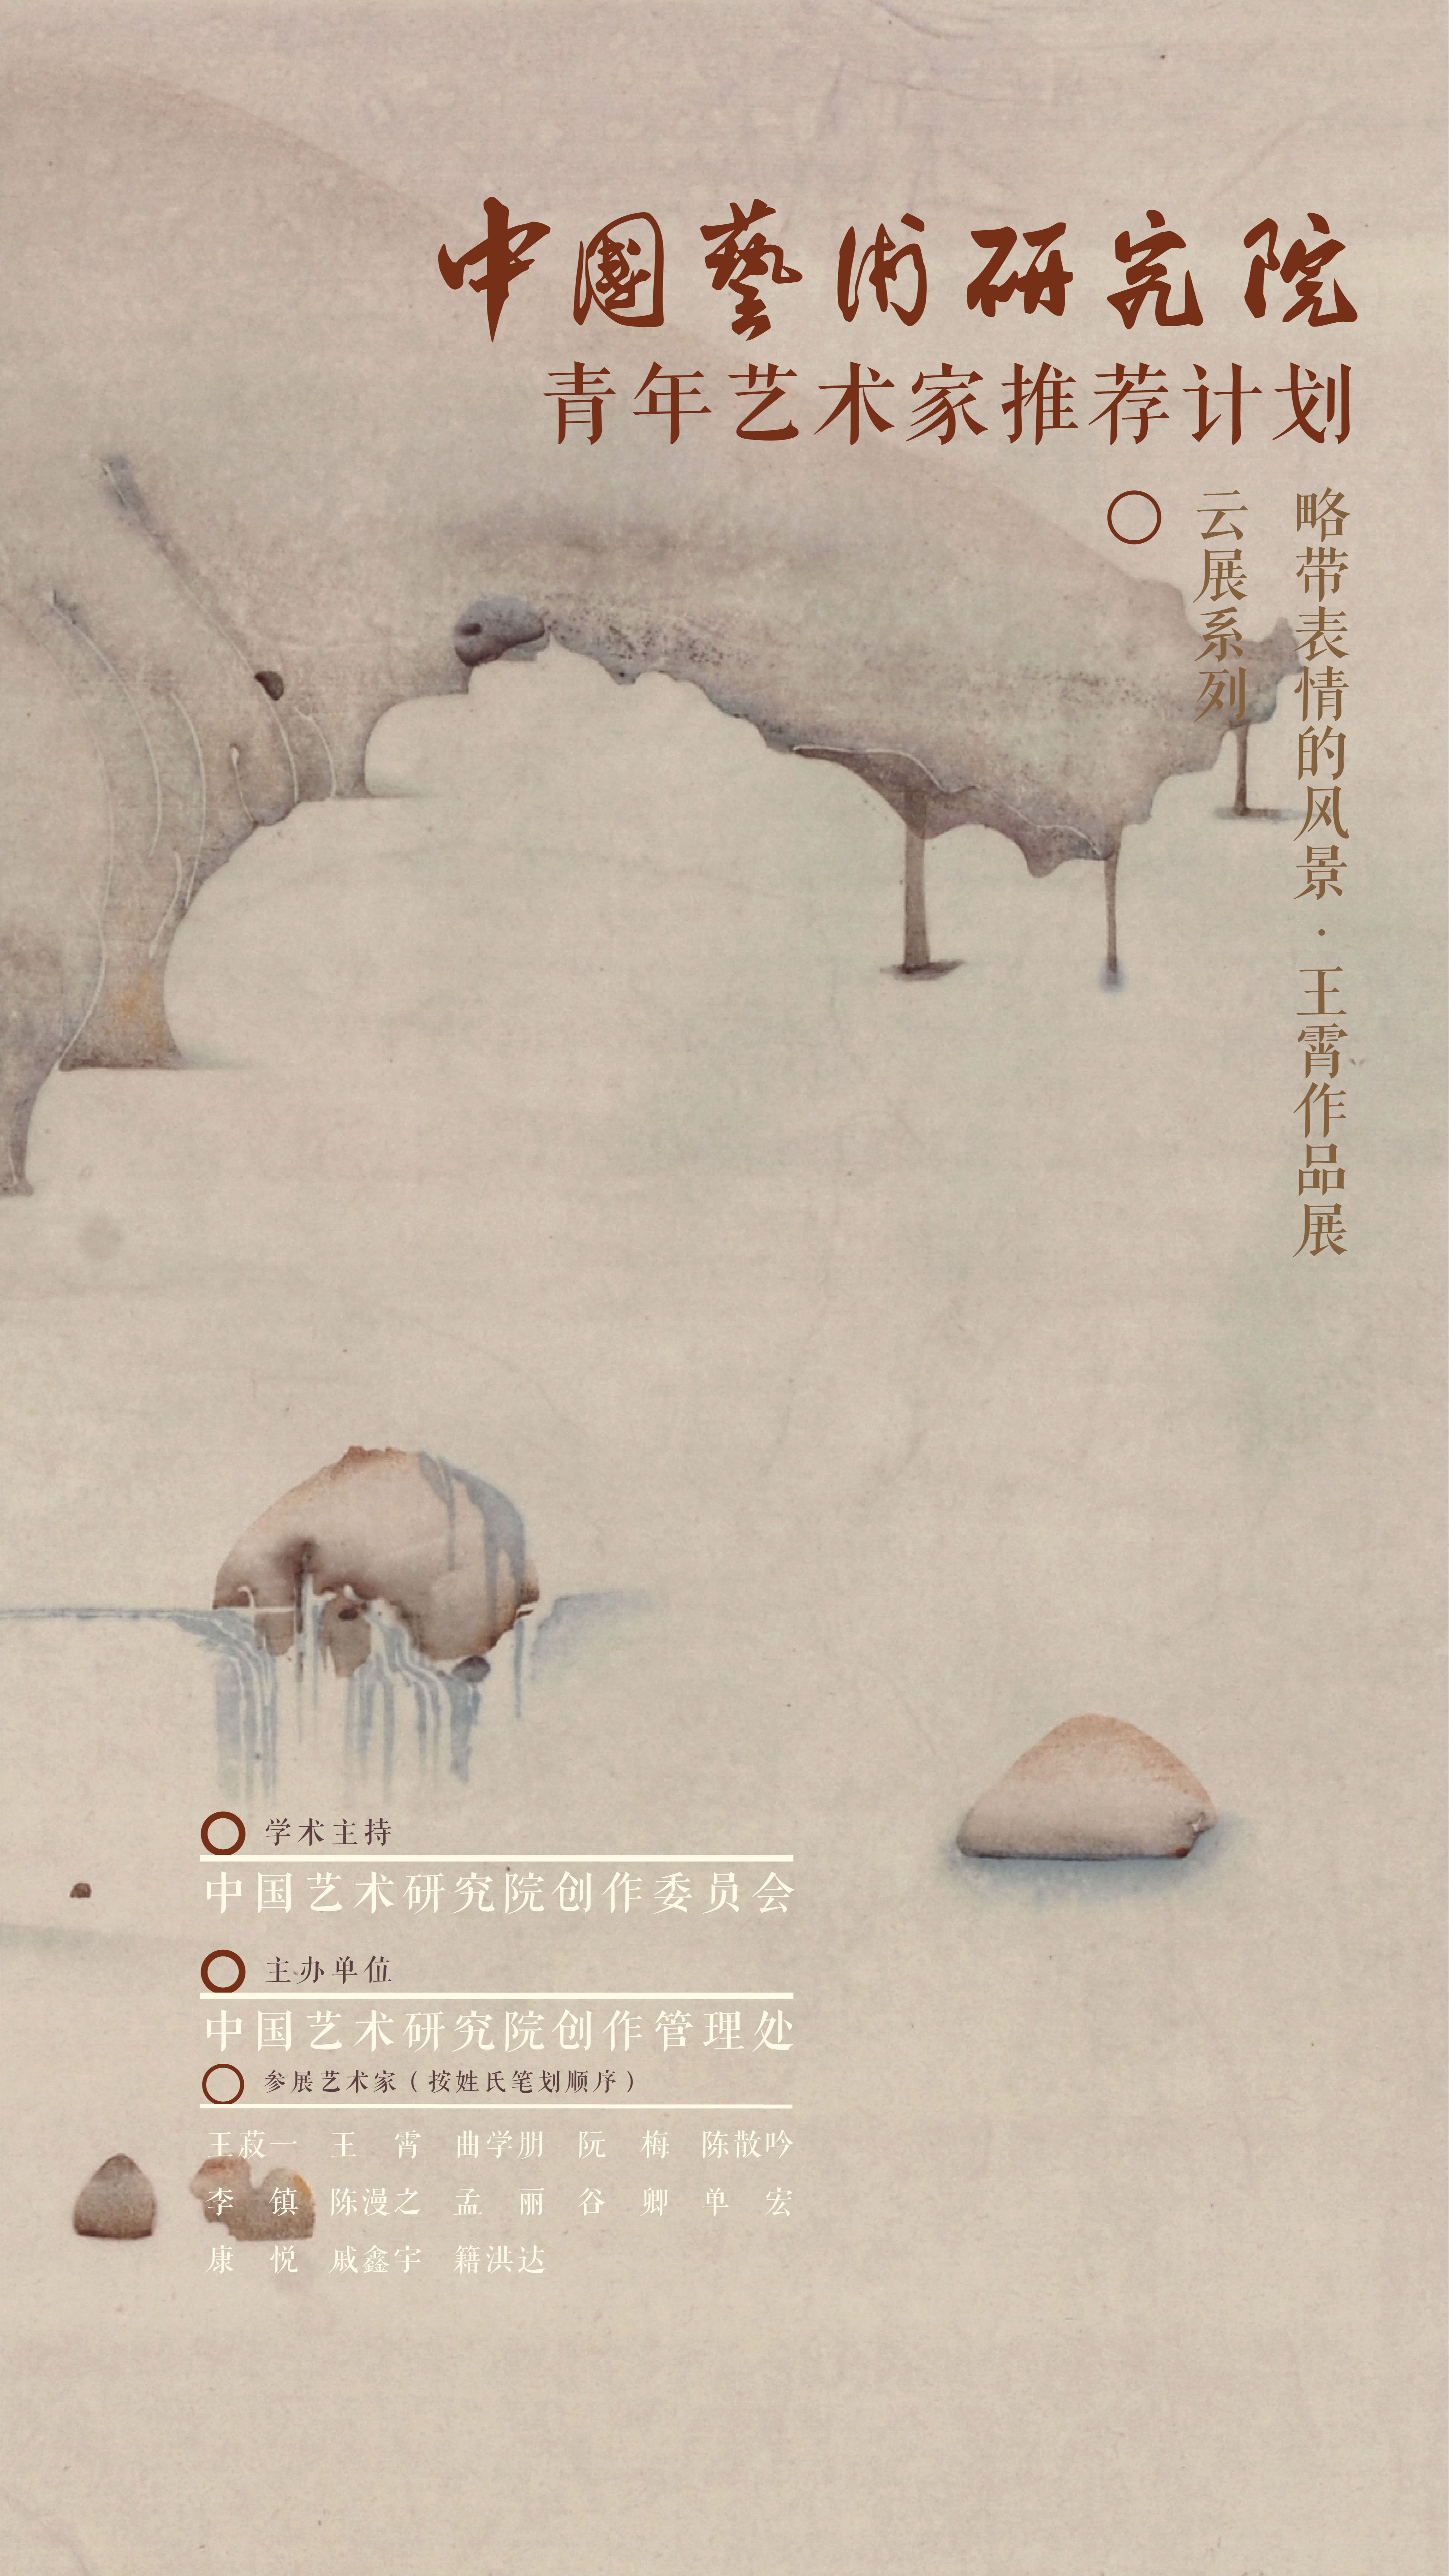 中国艺术研究院青年艺术家推荐计划云展系列：“略带表情的风景”王霄作品展